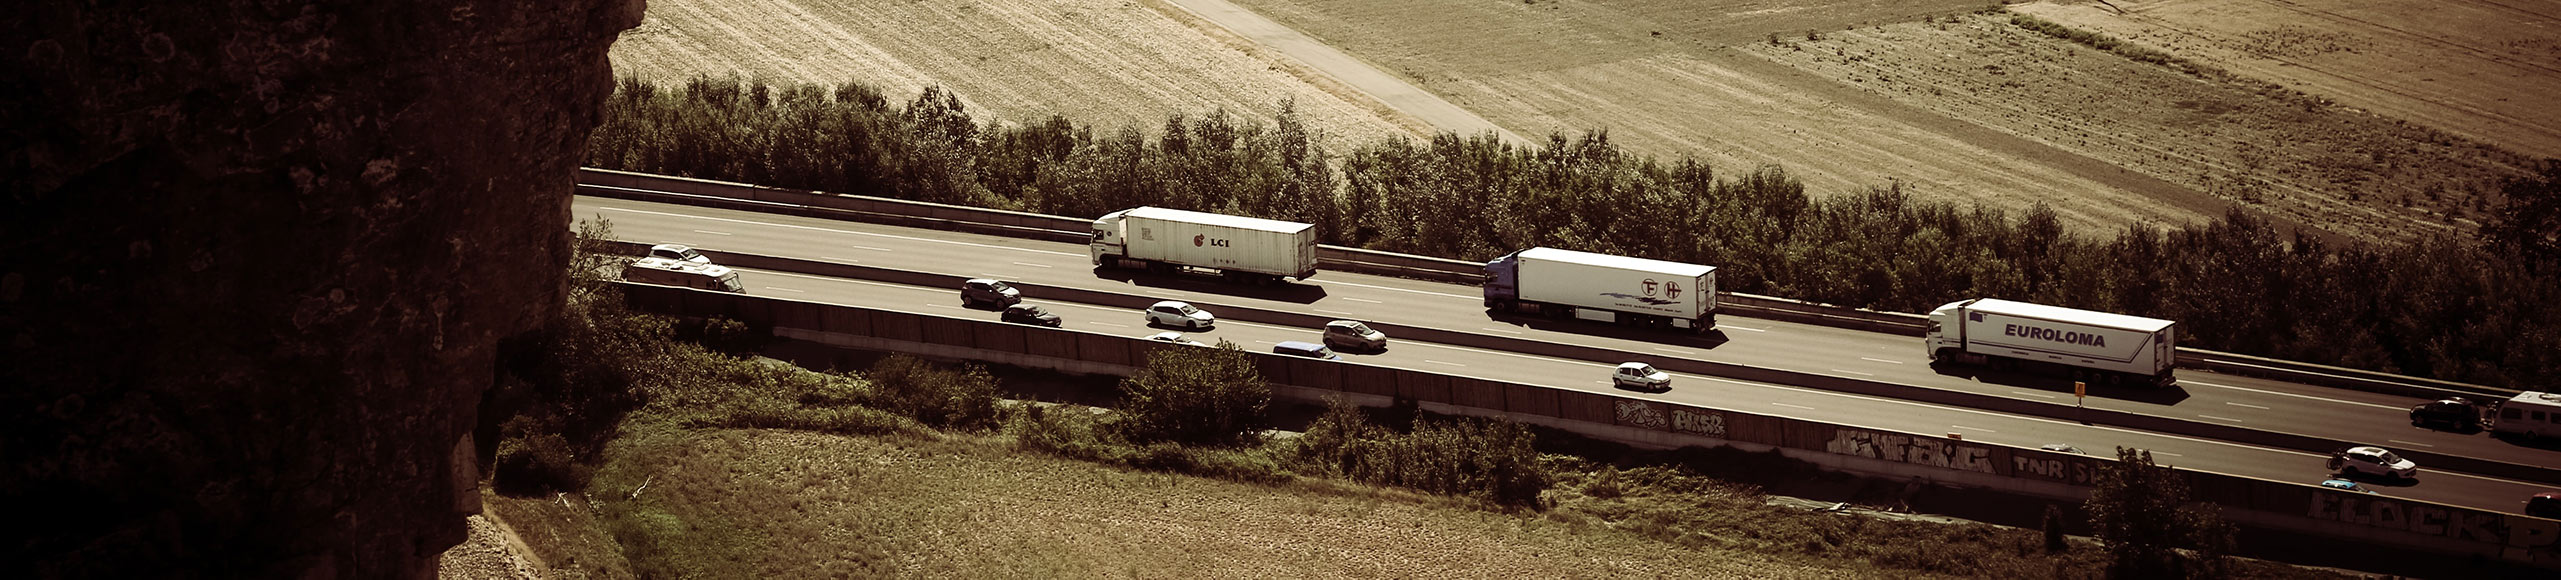 Vrachtwagens op snelweg - Nieuws